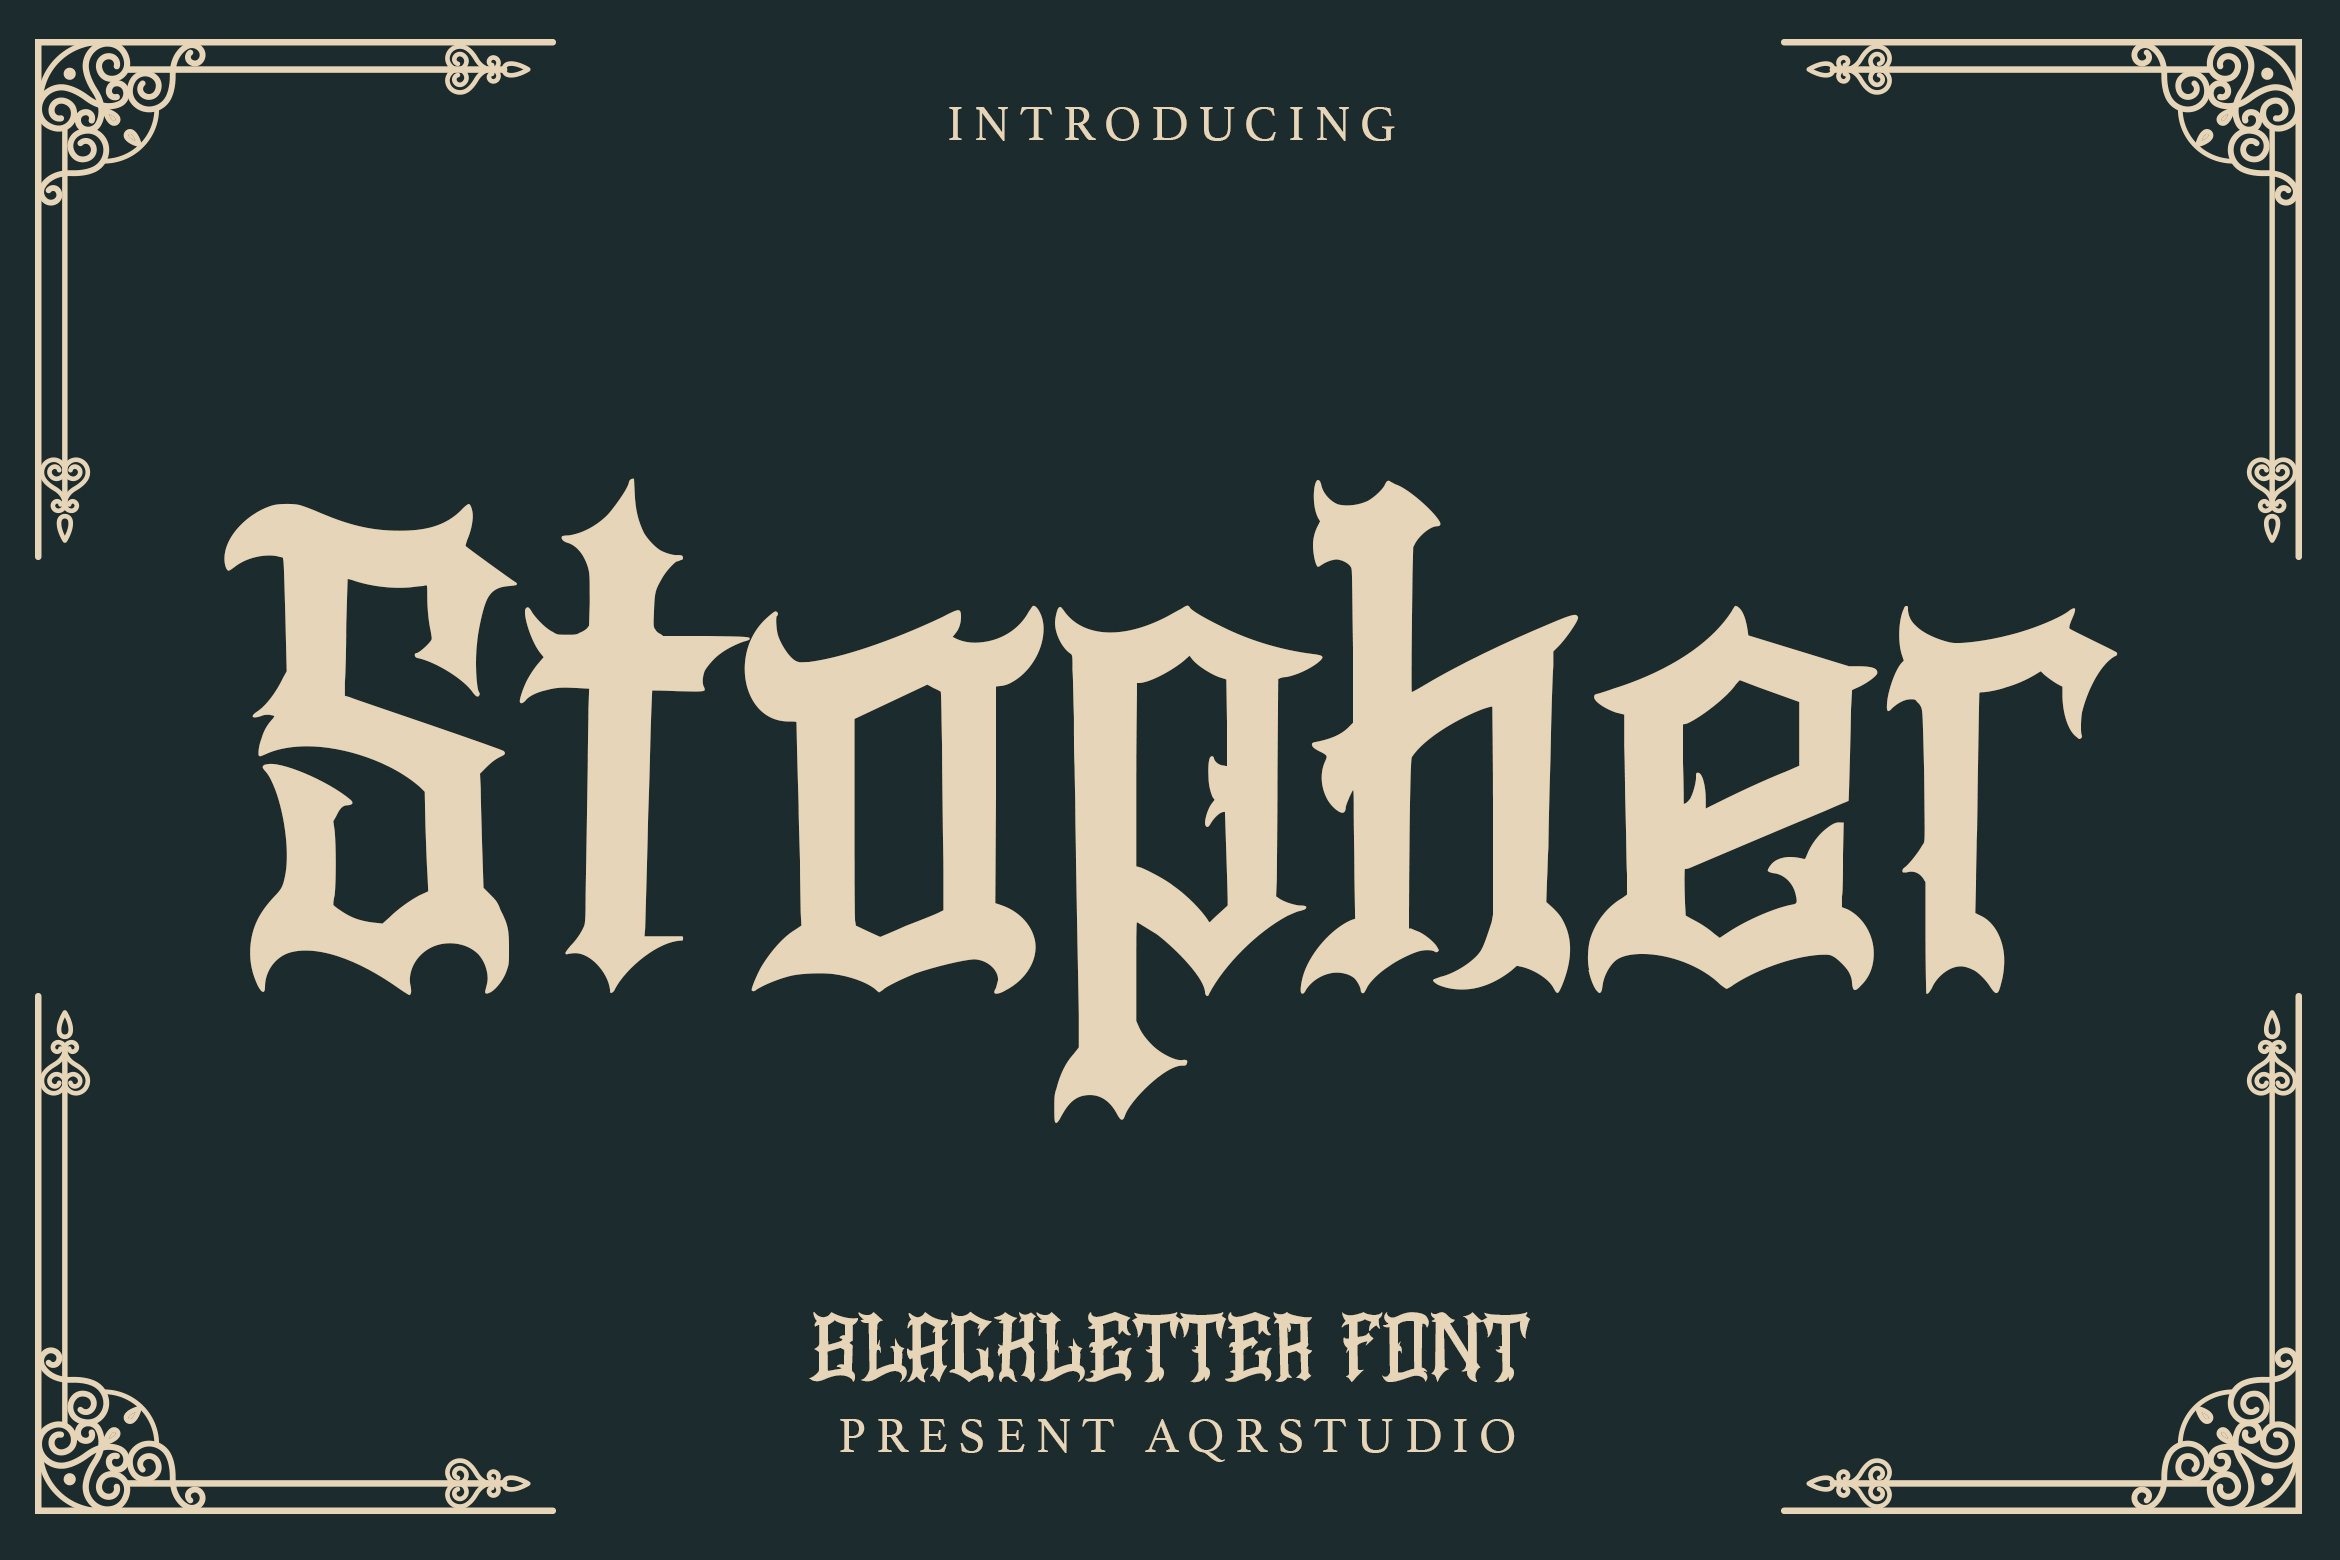 Stopher - Blackletter Font cover image.